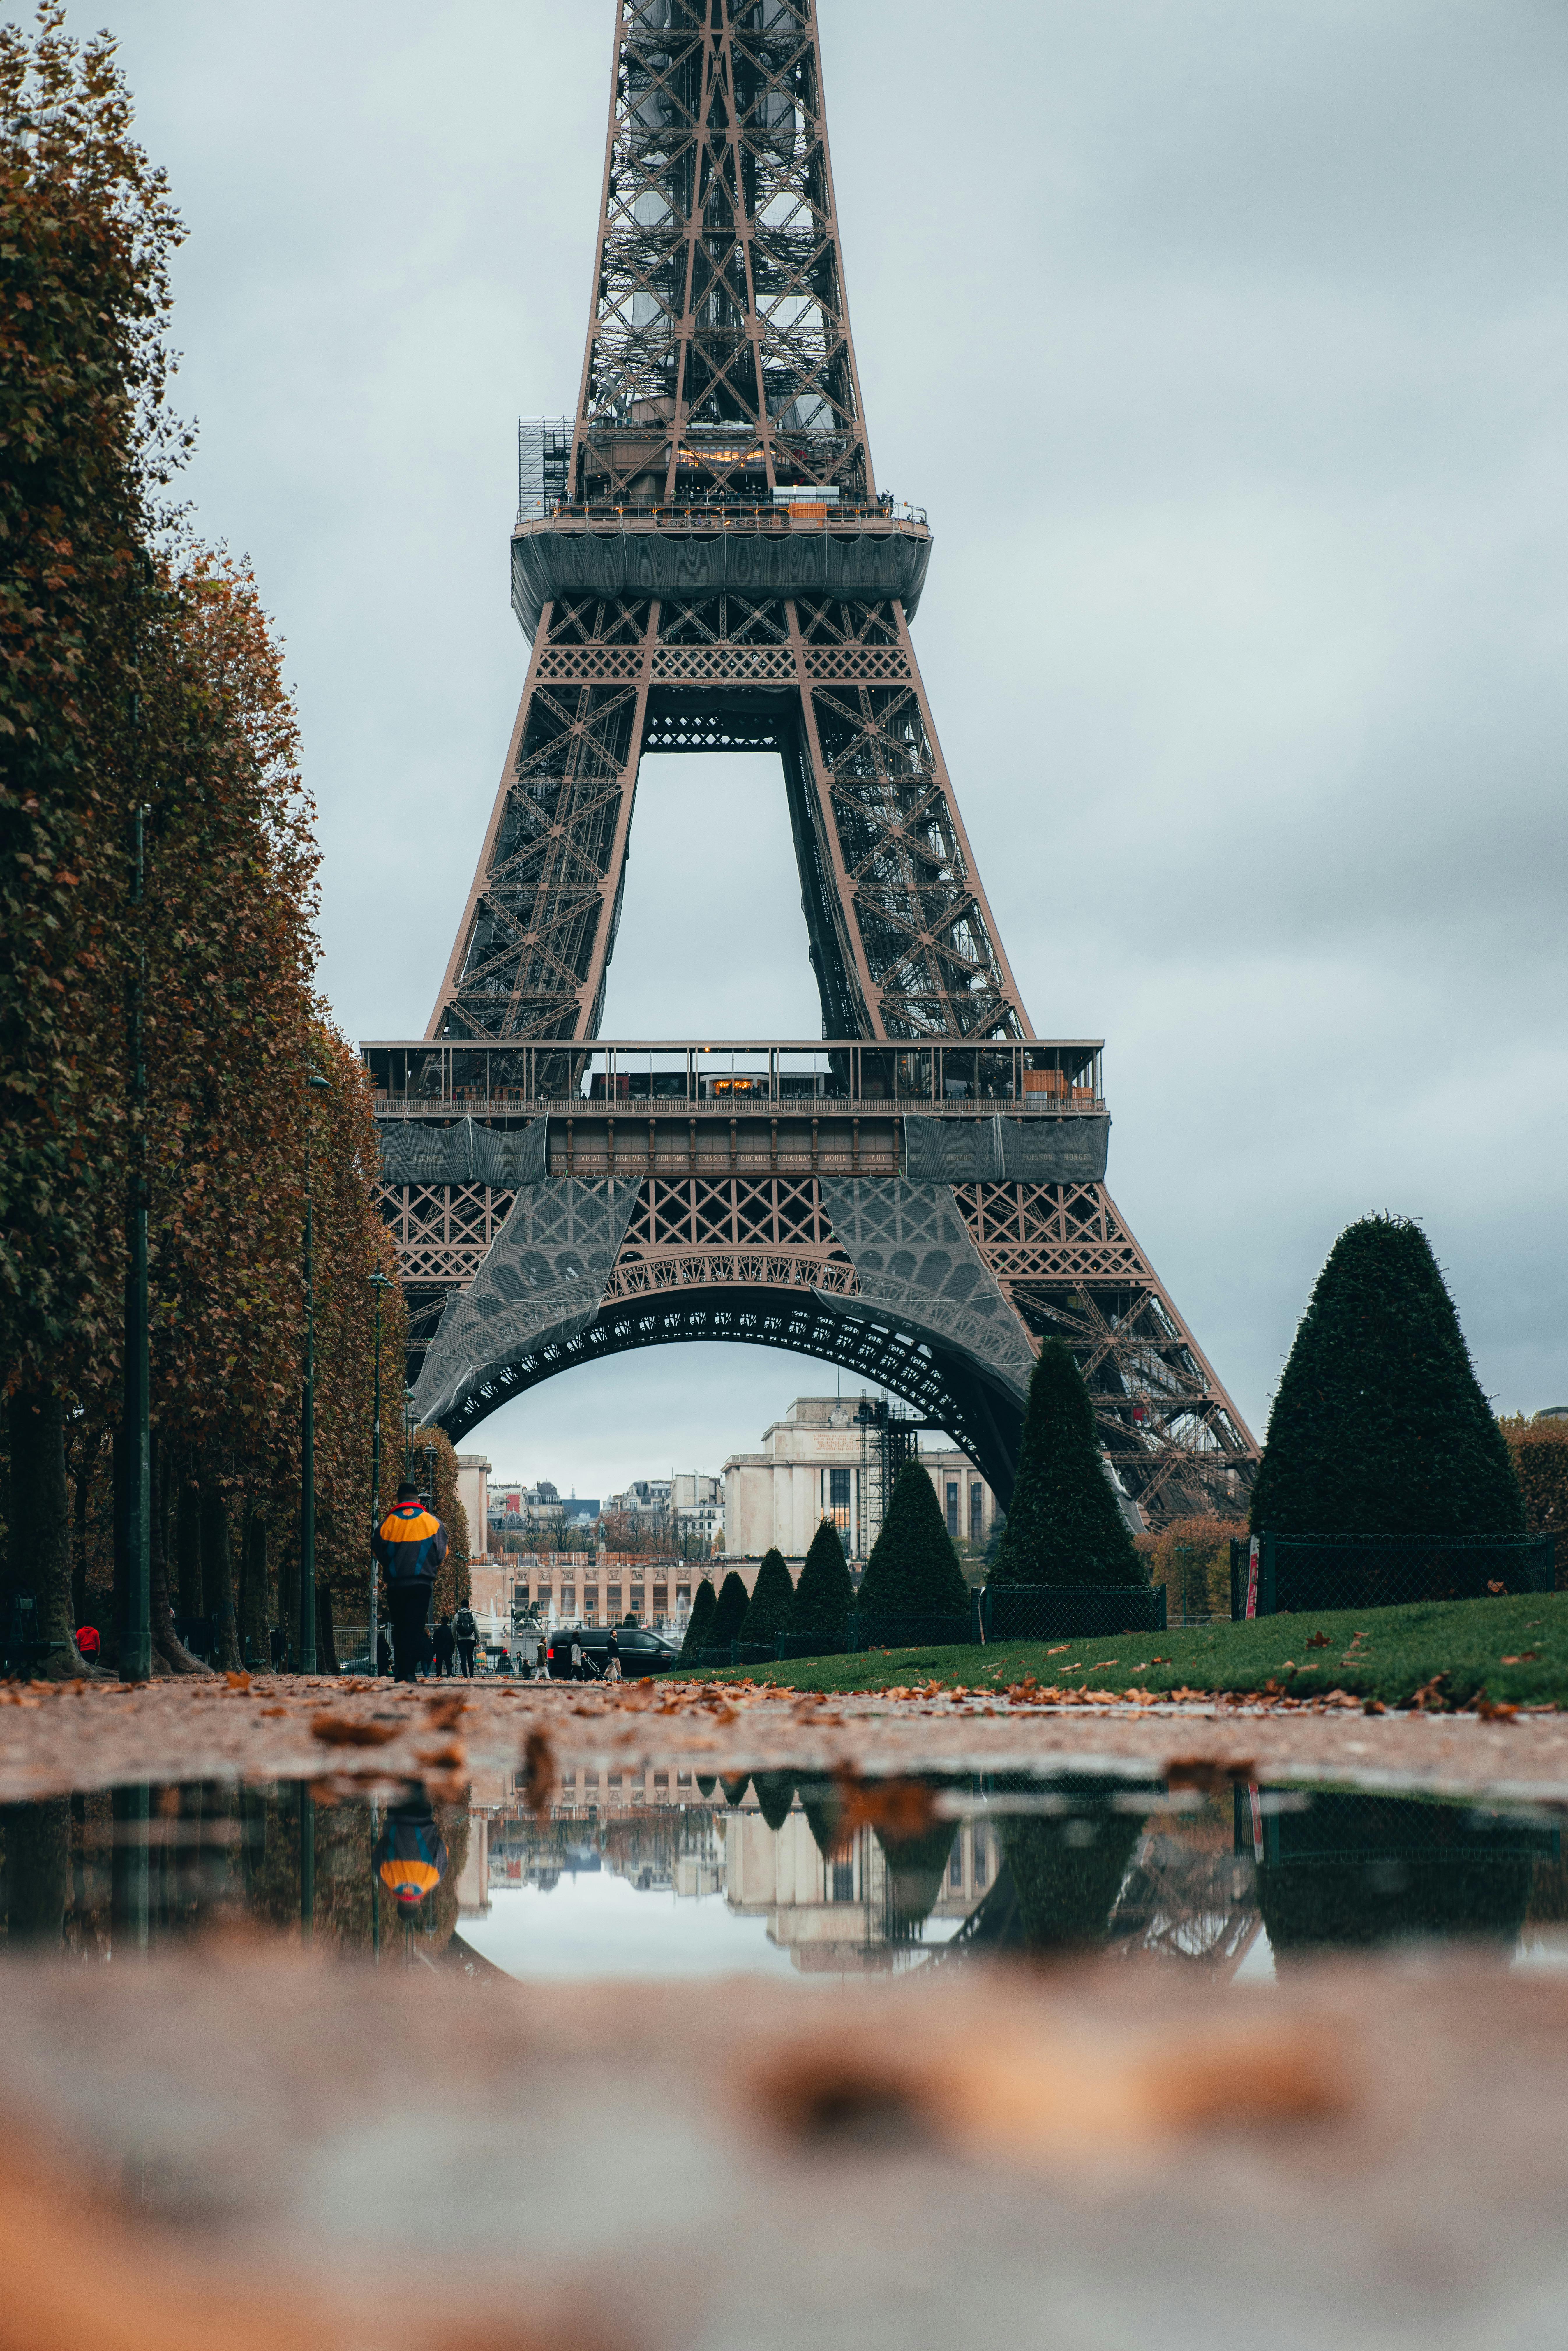 80000 ảnh đẹp nhất về Tháp Eiffel  Tải xuống miễn phí 100  Ảnh có sẵn  của Pexels